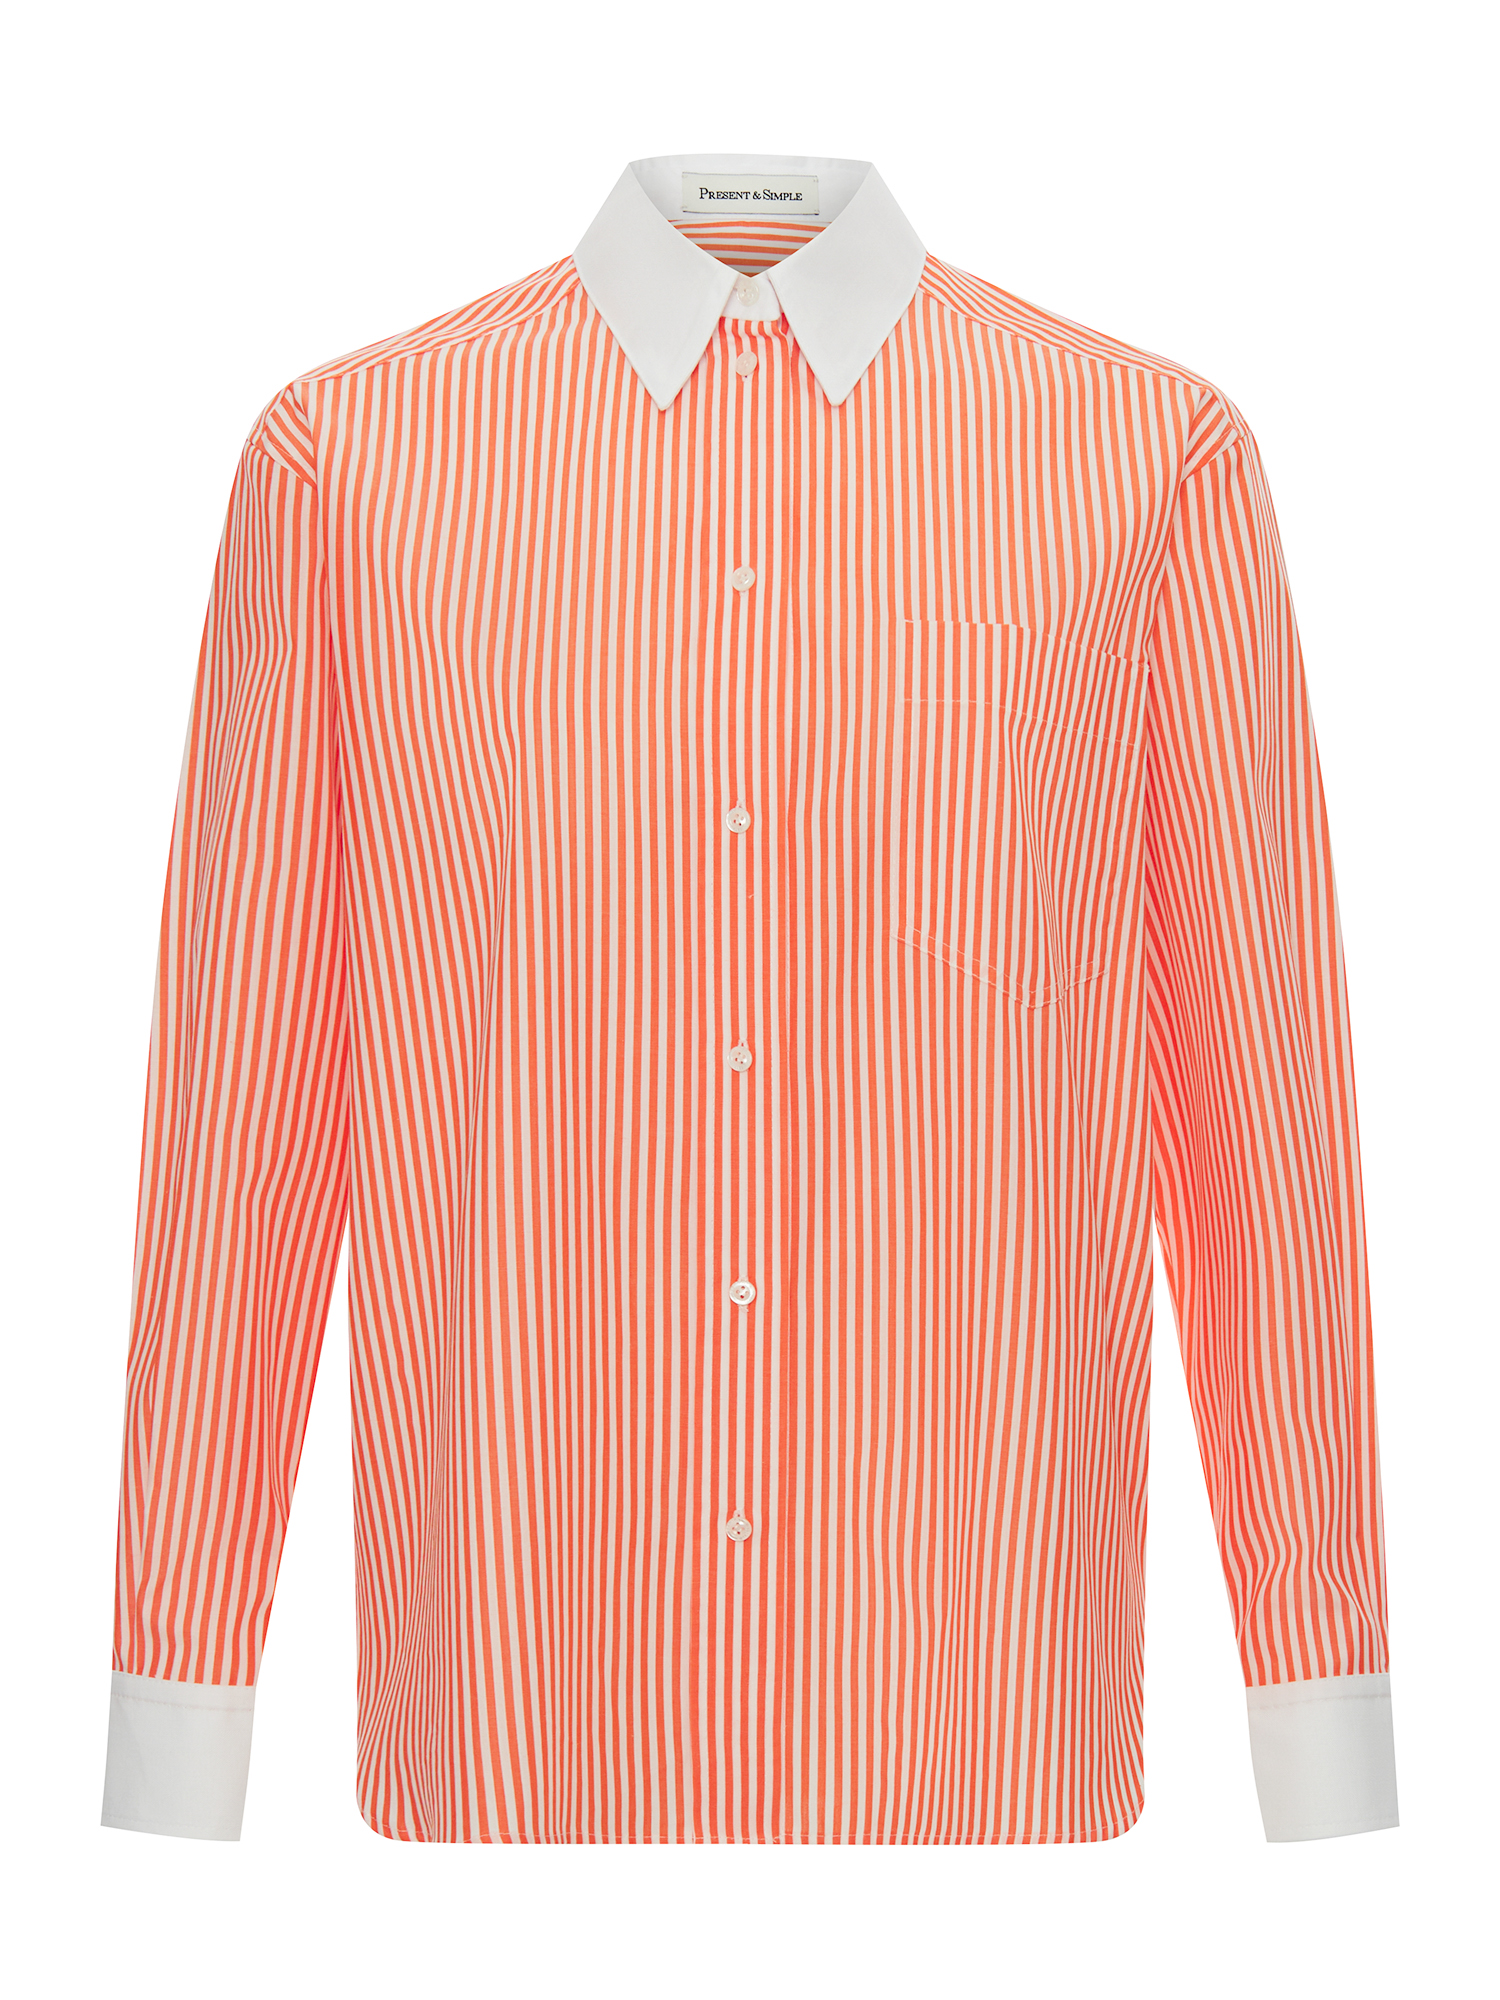 

Рубашка Banker's, Оранжевая полоска